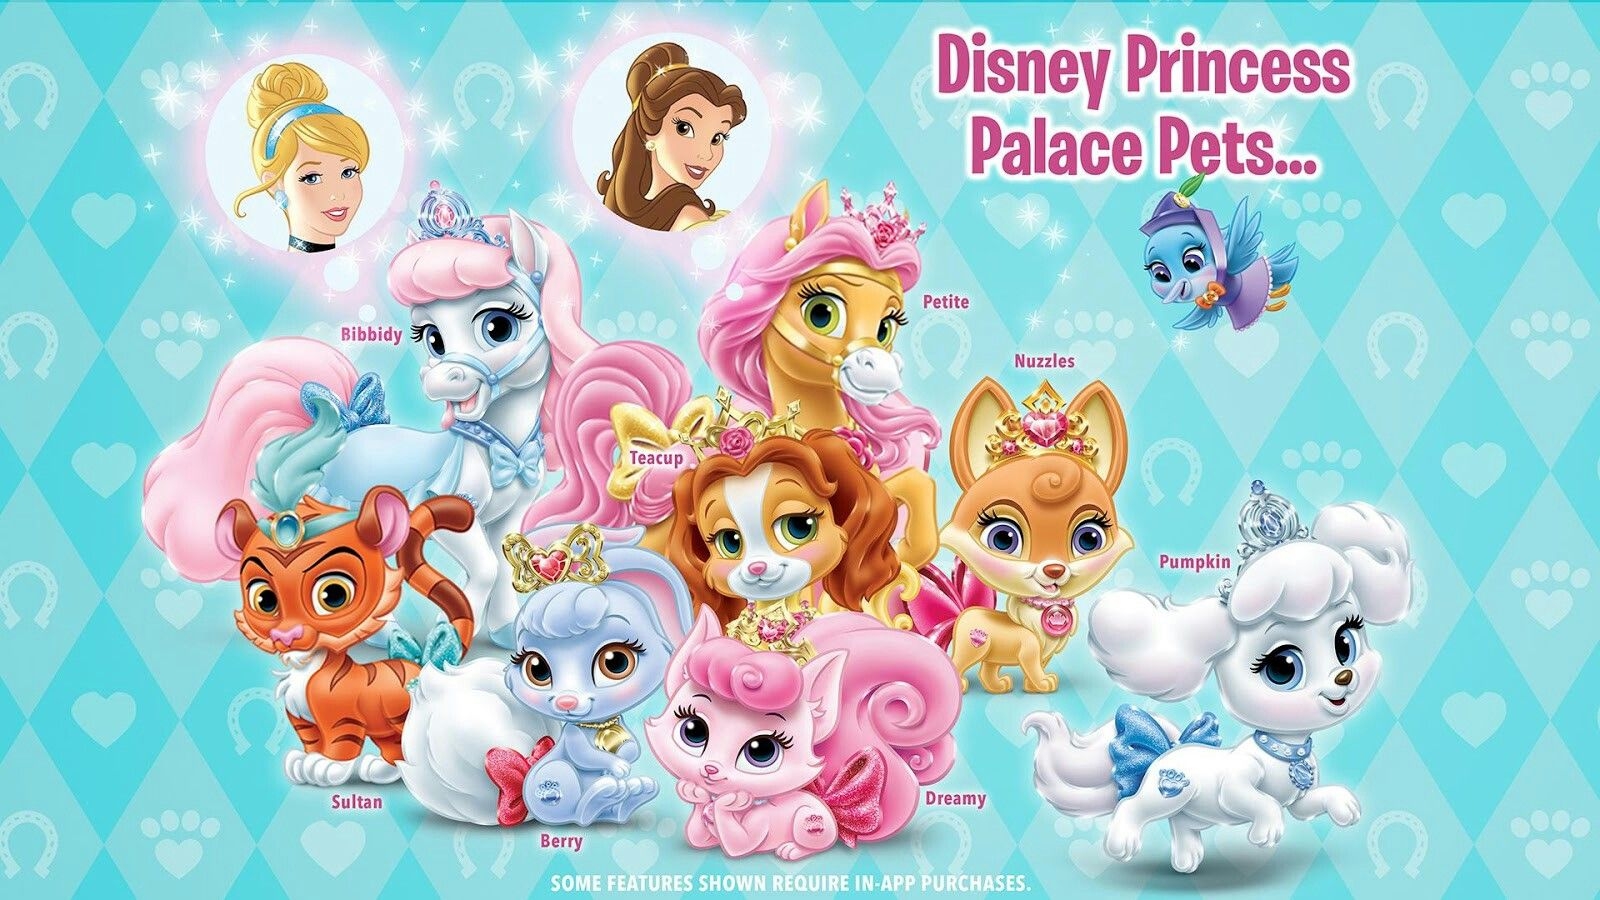 Palace Pets / Королевские питомцы с персонажем / серией Принцессы Дисней